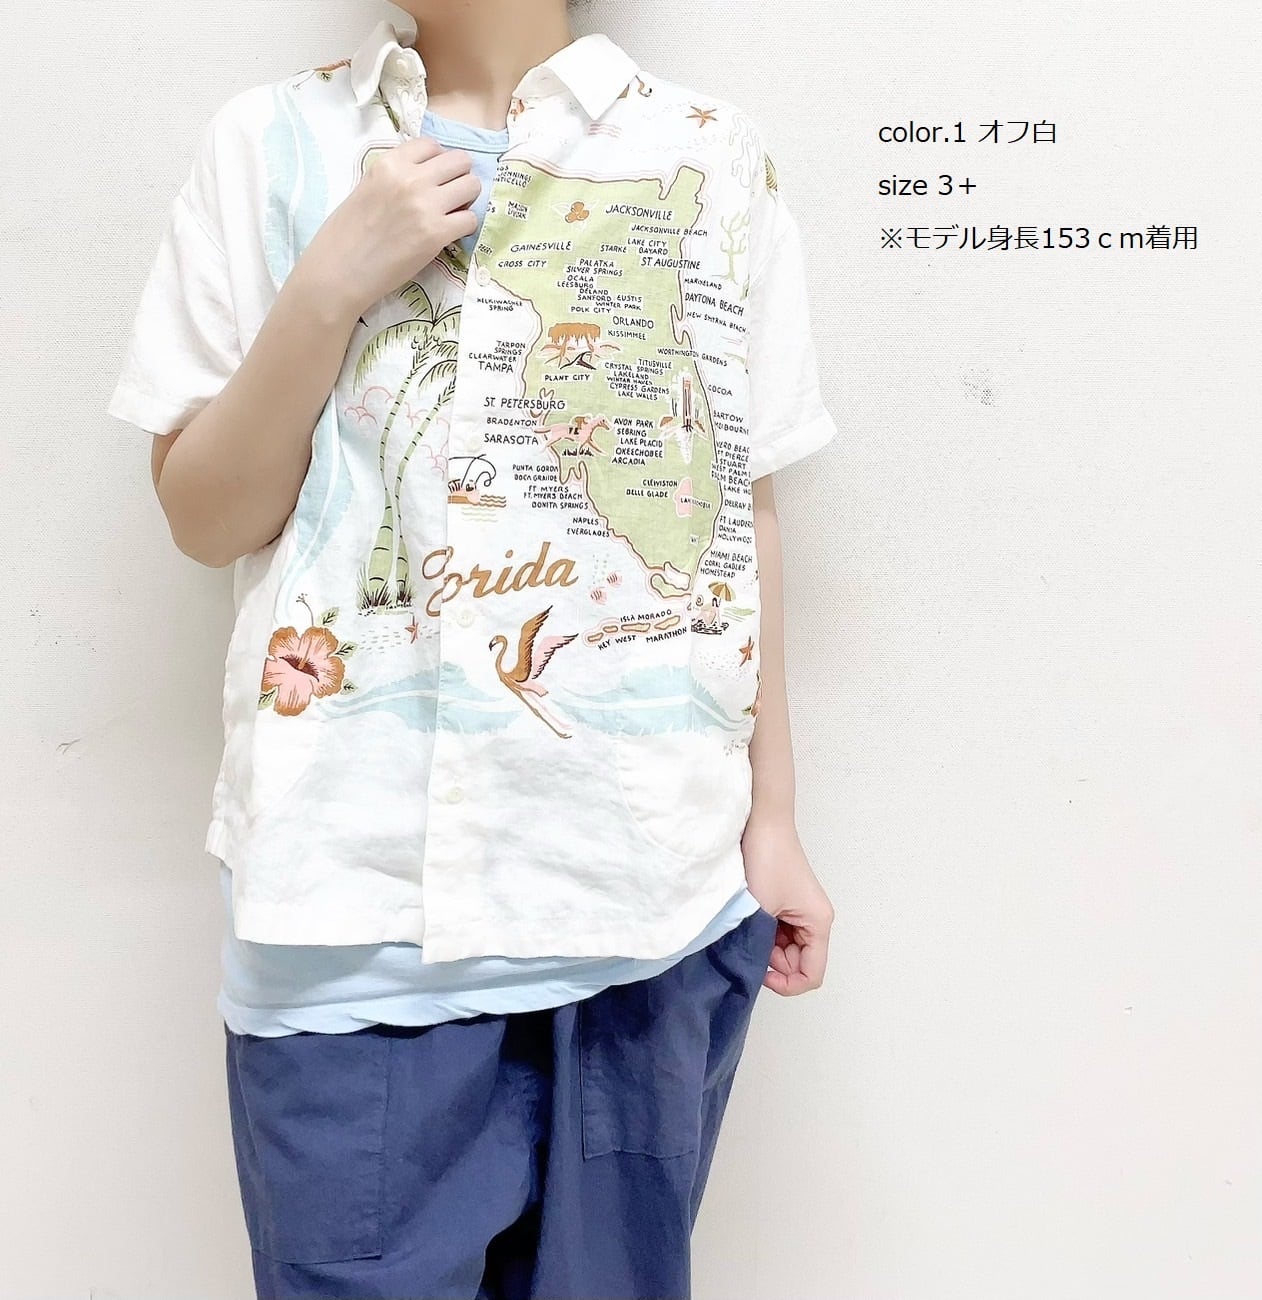 【快晴堂】Wide カロハシャツ / 32S-41G | syozikiya online shop powered by BASE